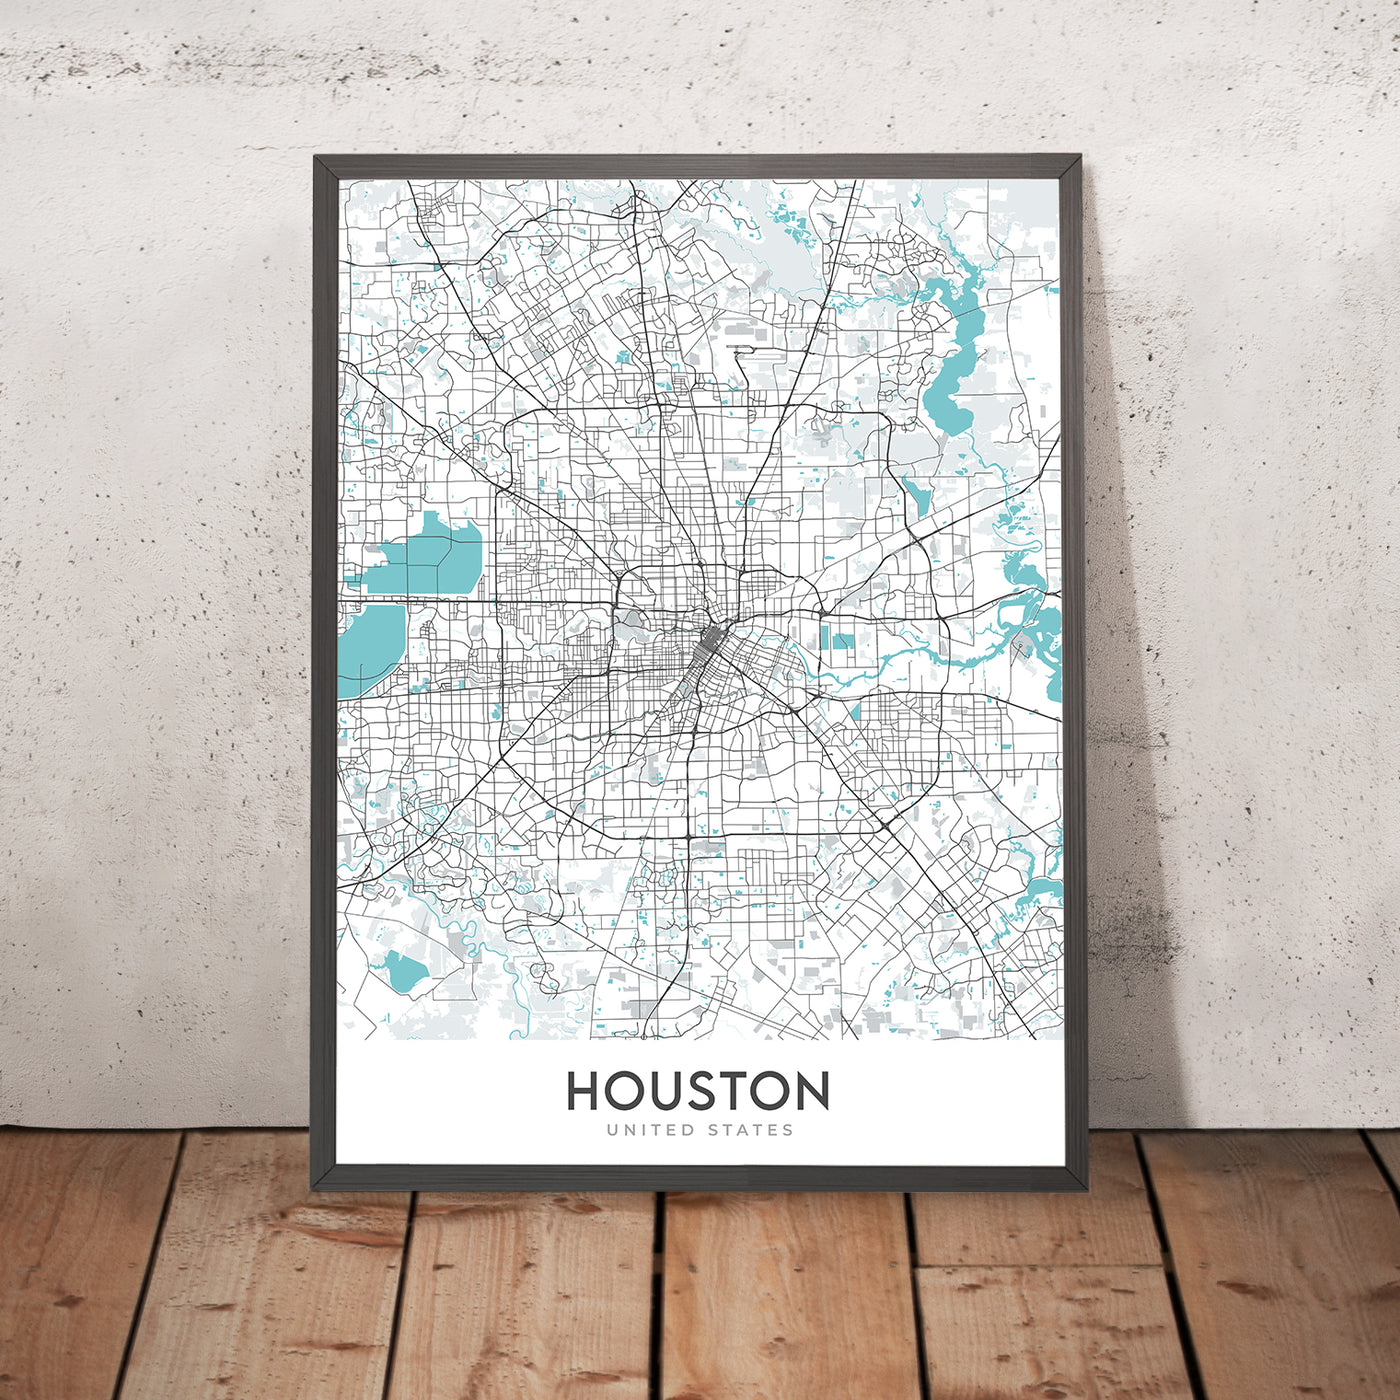 Moderner Stadtplan von Houston, TX: Innenstadt, Minute Maid Park, The Galleria, I-10, I-45